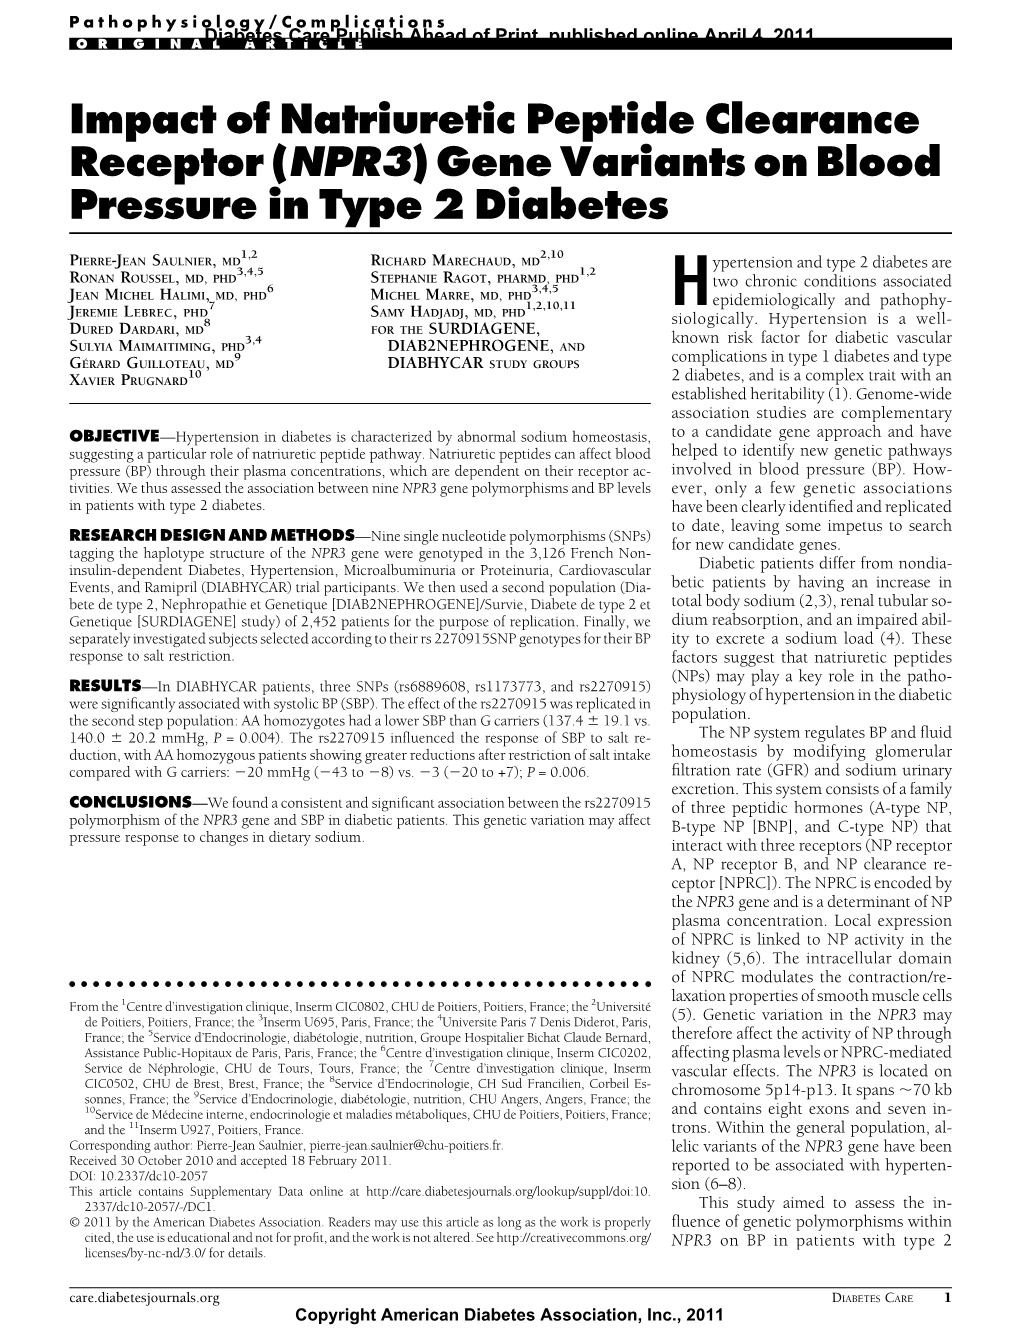 Impact of Natriuretic Peptide Clearance Receptor (NPR3) Gene Variants on Blood Pressure in Type 2 Diabetes